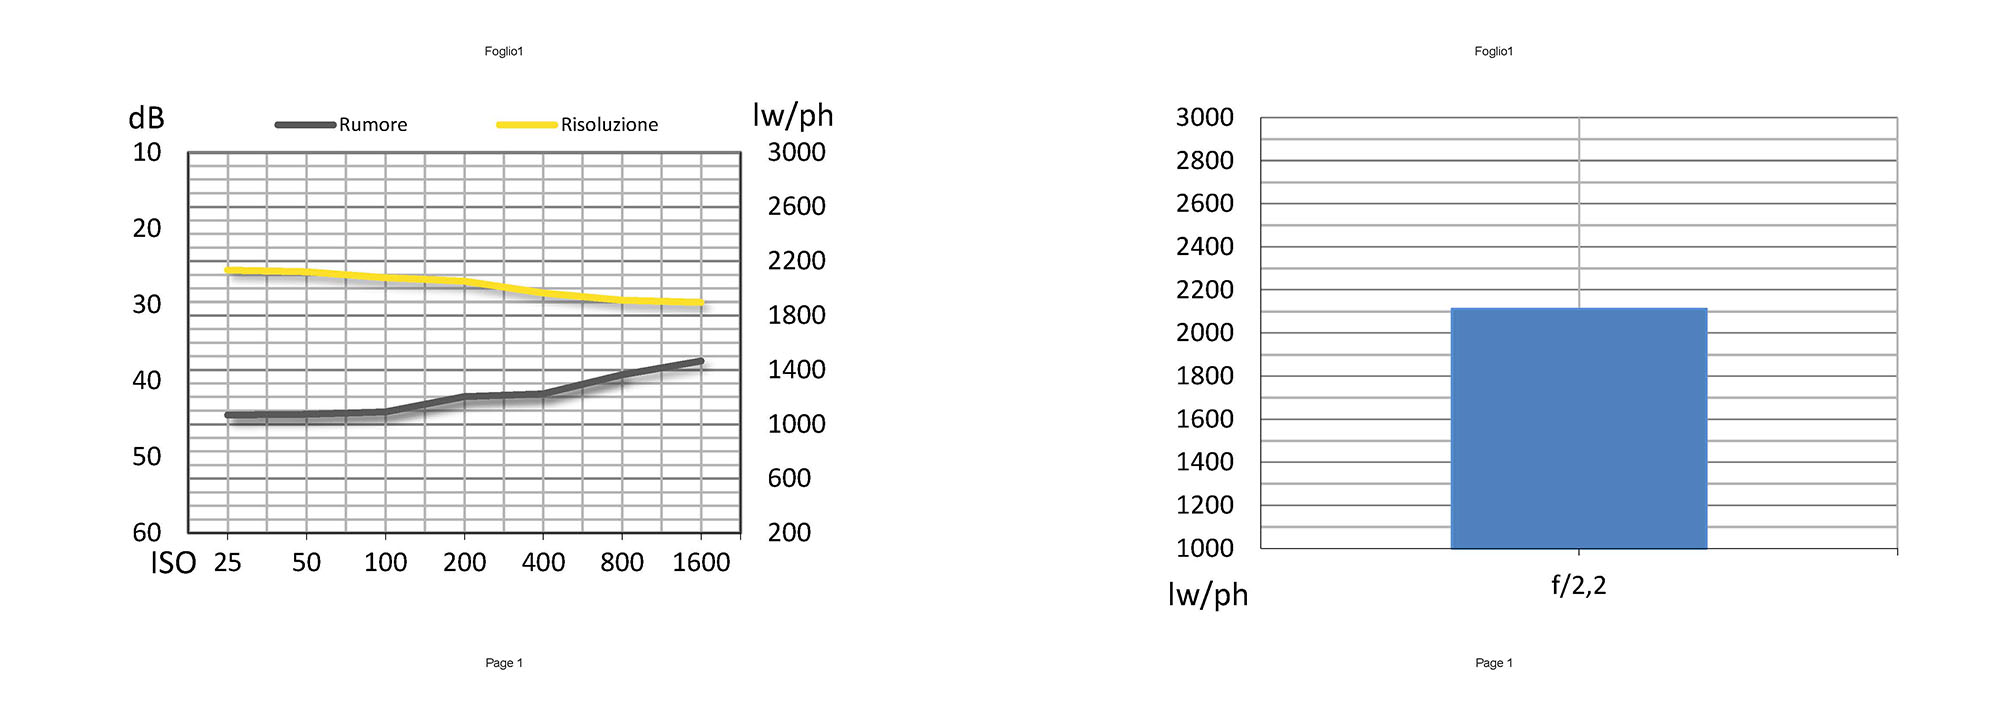 La fotocamera grandangolare copre un angolo di campo di 120 gradi e grazie alla risoluzione di 8 Mpxl mantiene fotodiodi di dimensione equivalente a quelli della fotocamera standard. Complice la medesima taratura del software, l’andamento della risoluzione al variare della sensibilità è lineare, con solo qualche picco nella riduzione rumore in particolare a 200 ISO. La risoluzione supera di poco le 2100 lw/ph, un risultato nella media dei sensori da 8 Mpxl.